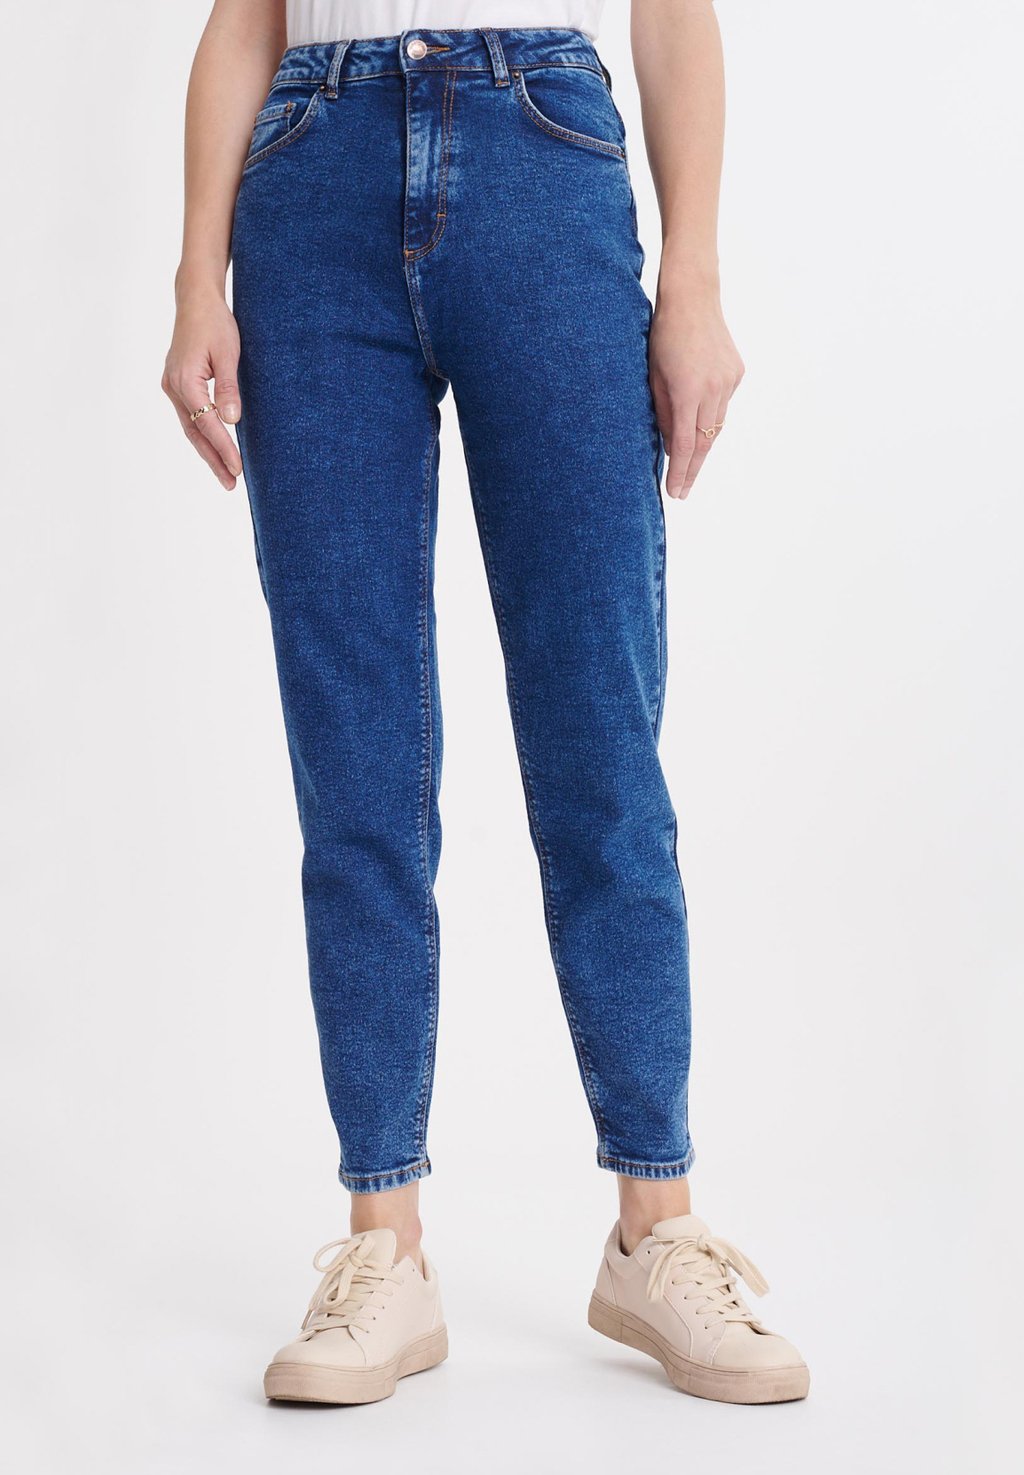 Джинсы узкого кроя Greenpoint, темно-синие темно синие жесткие джинсы узкого кроя new look